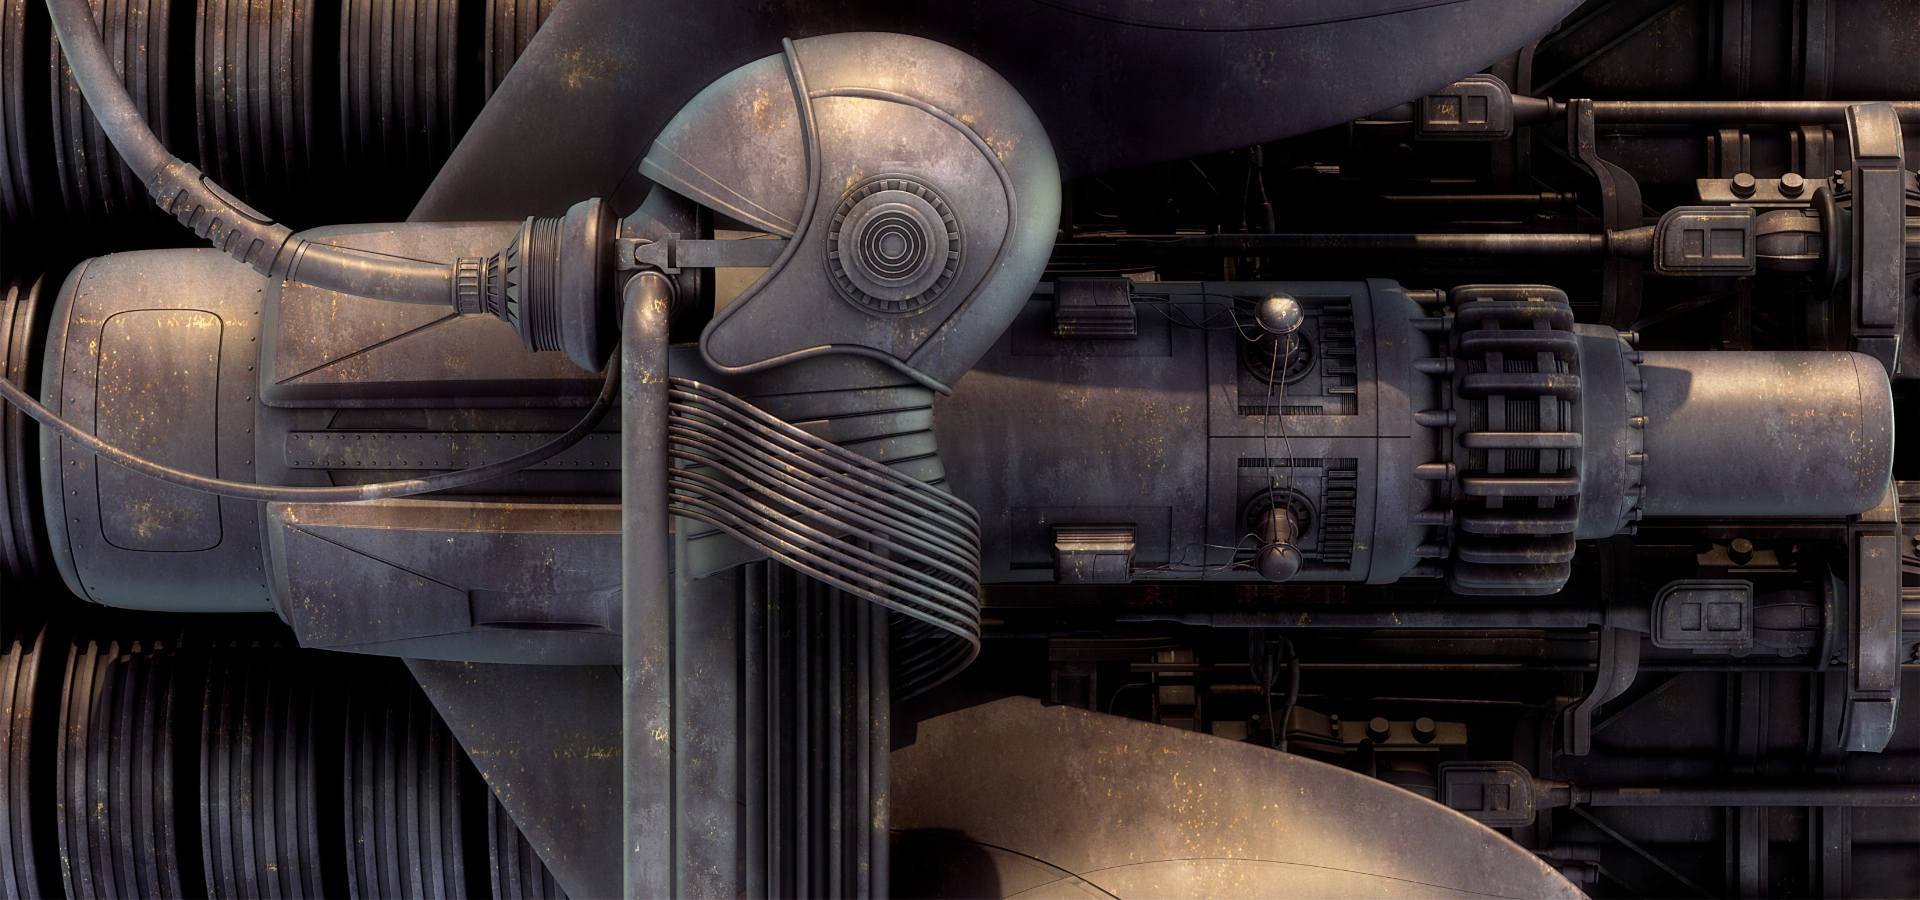 En bild på en grå hjälm som är kopplad till en syr mask. I bakgrunden är det ett bygge som ger känslan att bilden är tagen i en fabrik. 